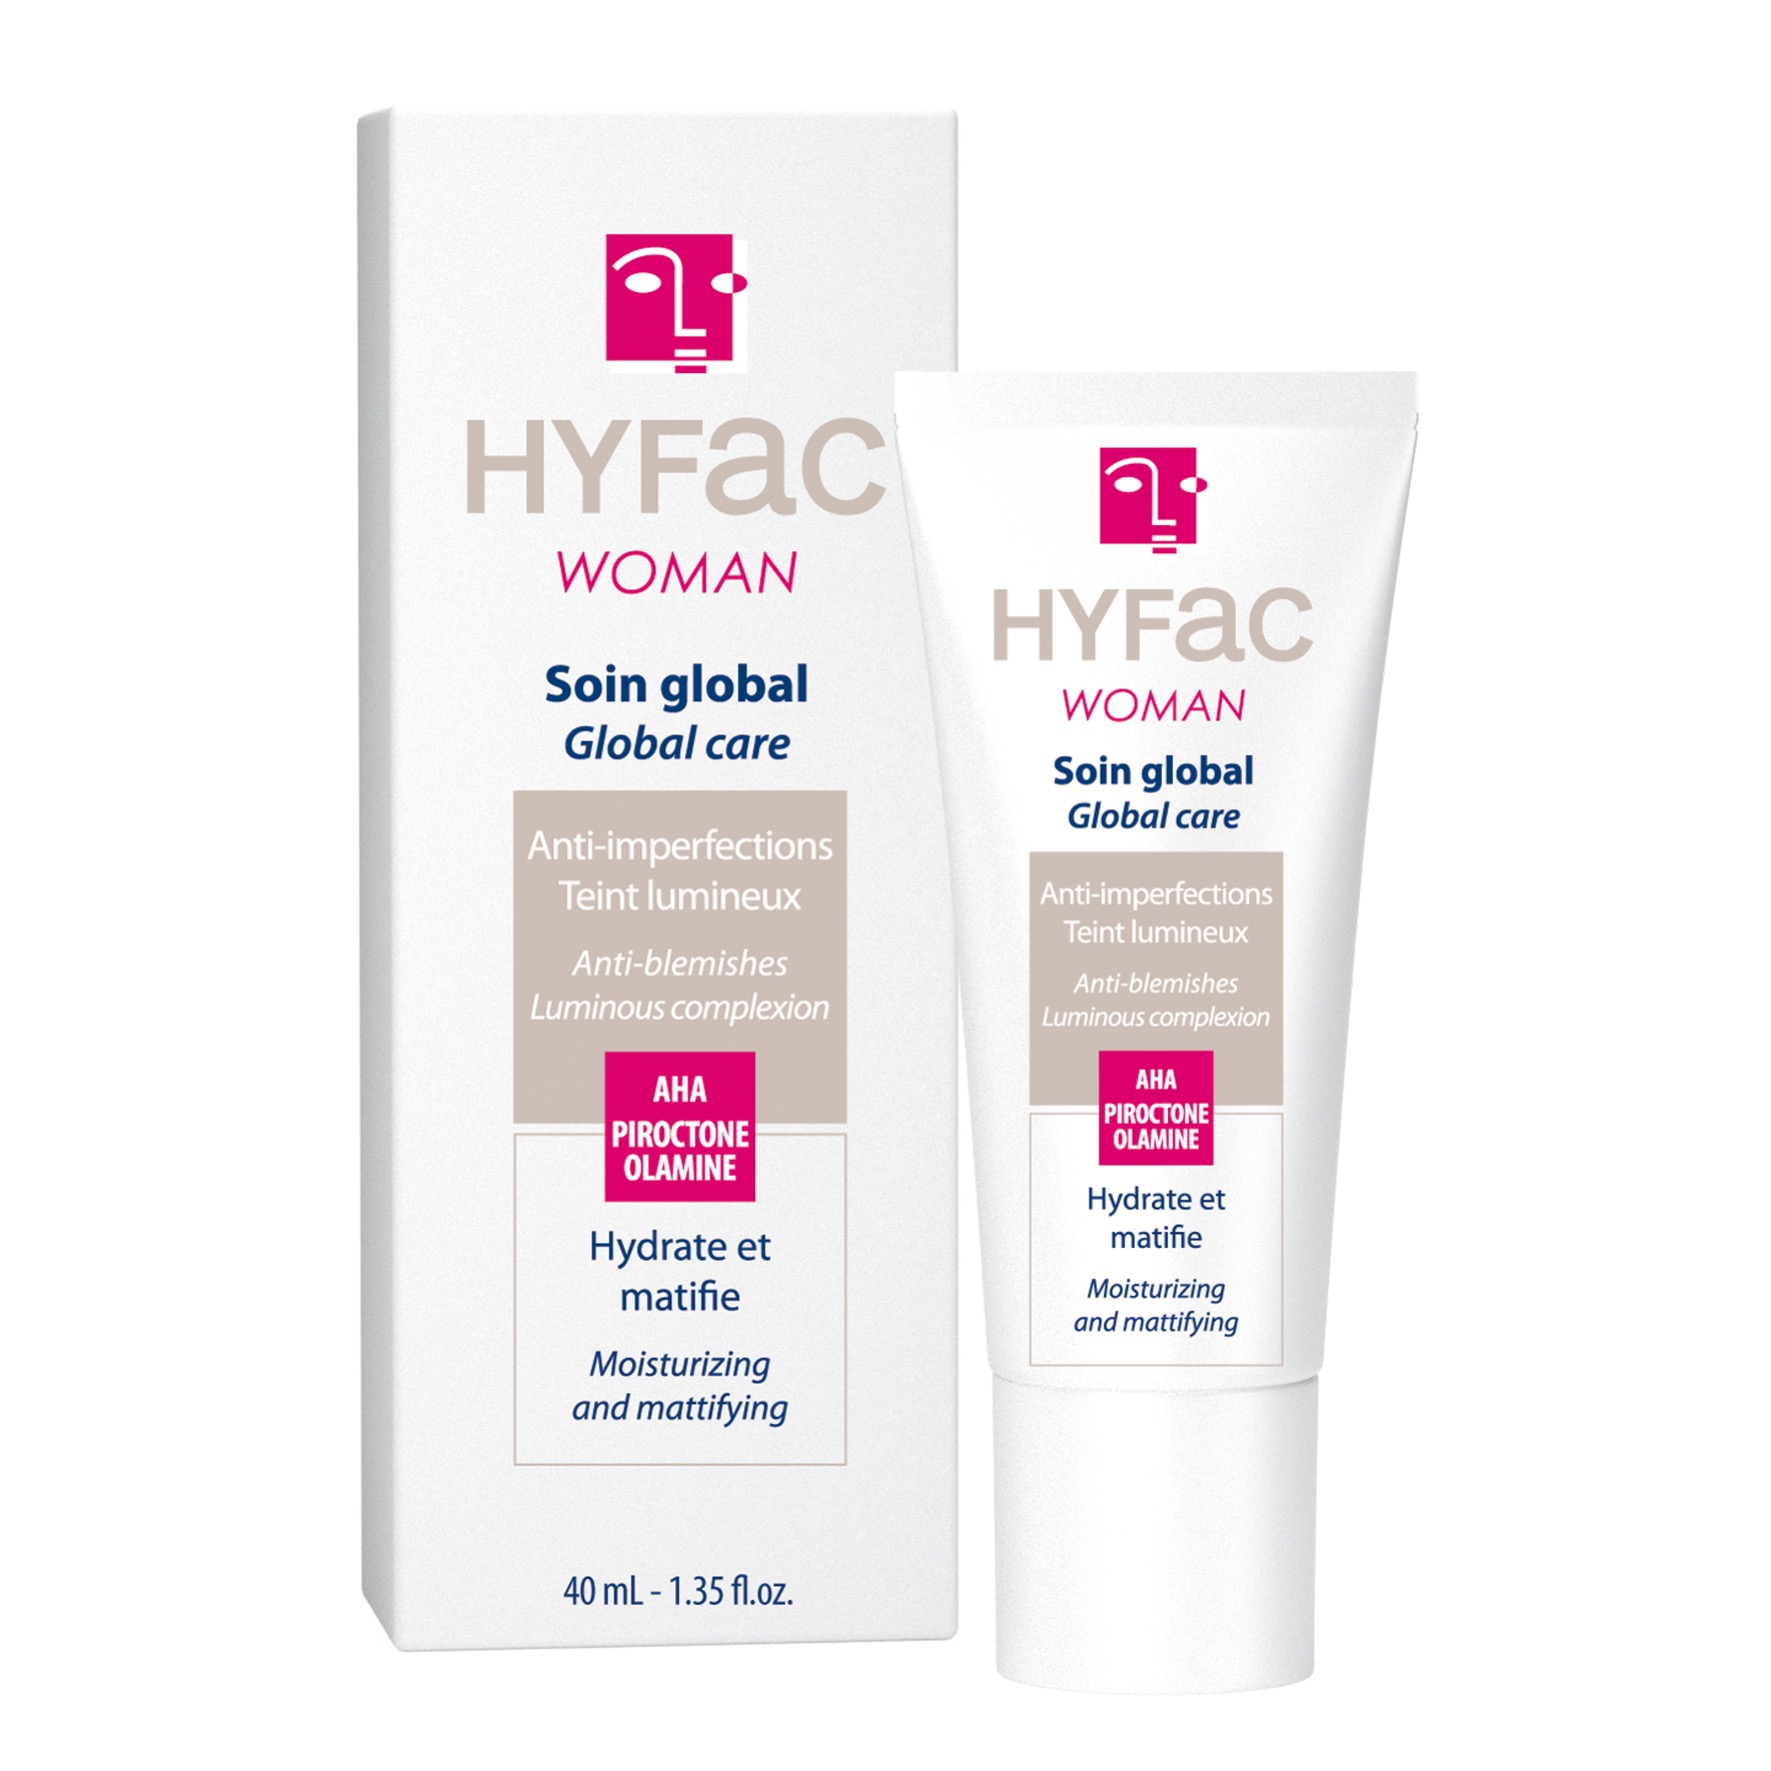 HYFAC WOMAN cuidado global antiimperfecciones para mujeres con acné